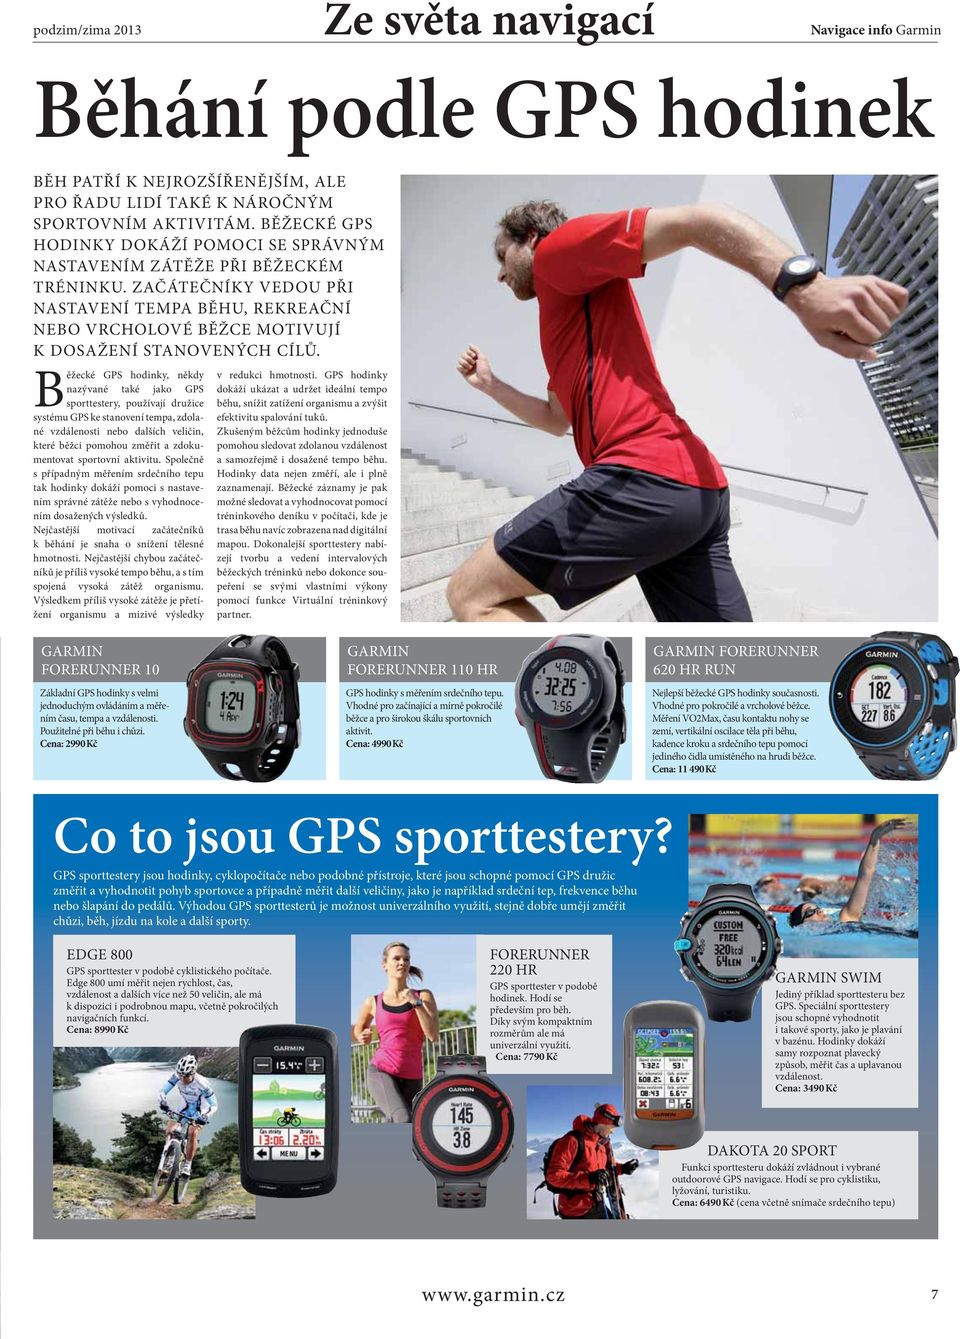 Běžecké GPS hodinky, někdy nazývané také jako GPS sporttestery, používají družice systému GPS ke stvení tempa, zdolané vzdálenosti nebo dalších veličin, které běžci pomohou změřit a zdokumentovat